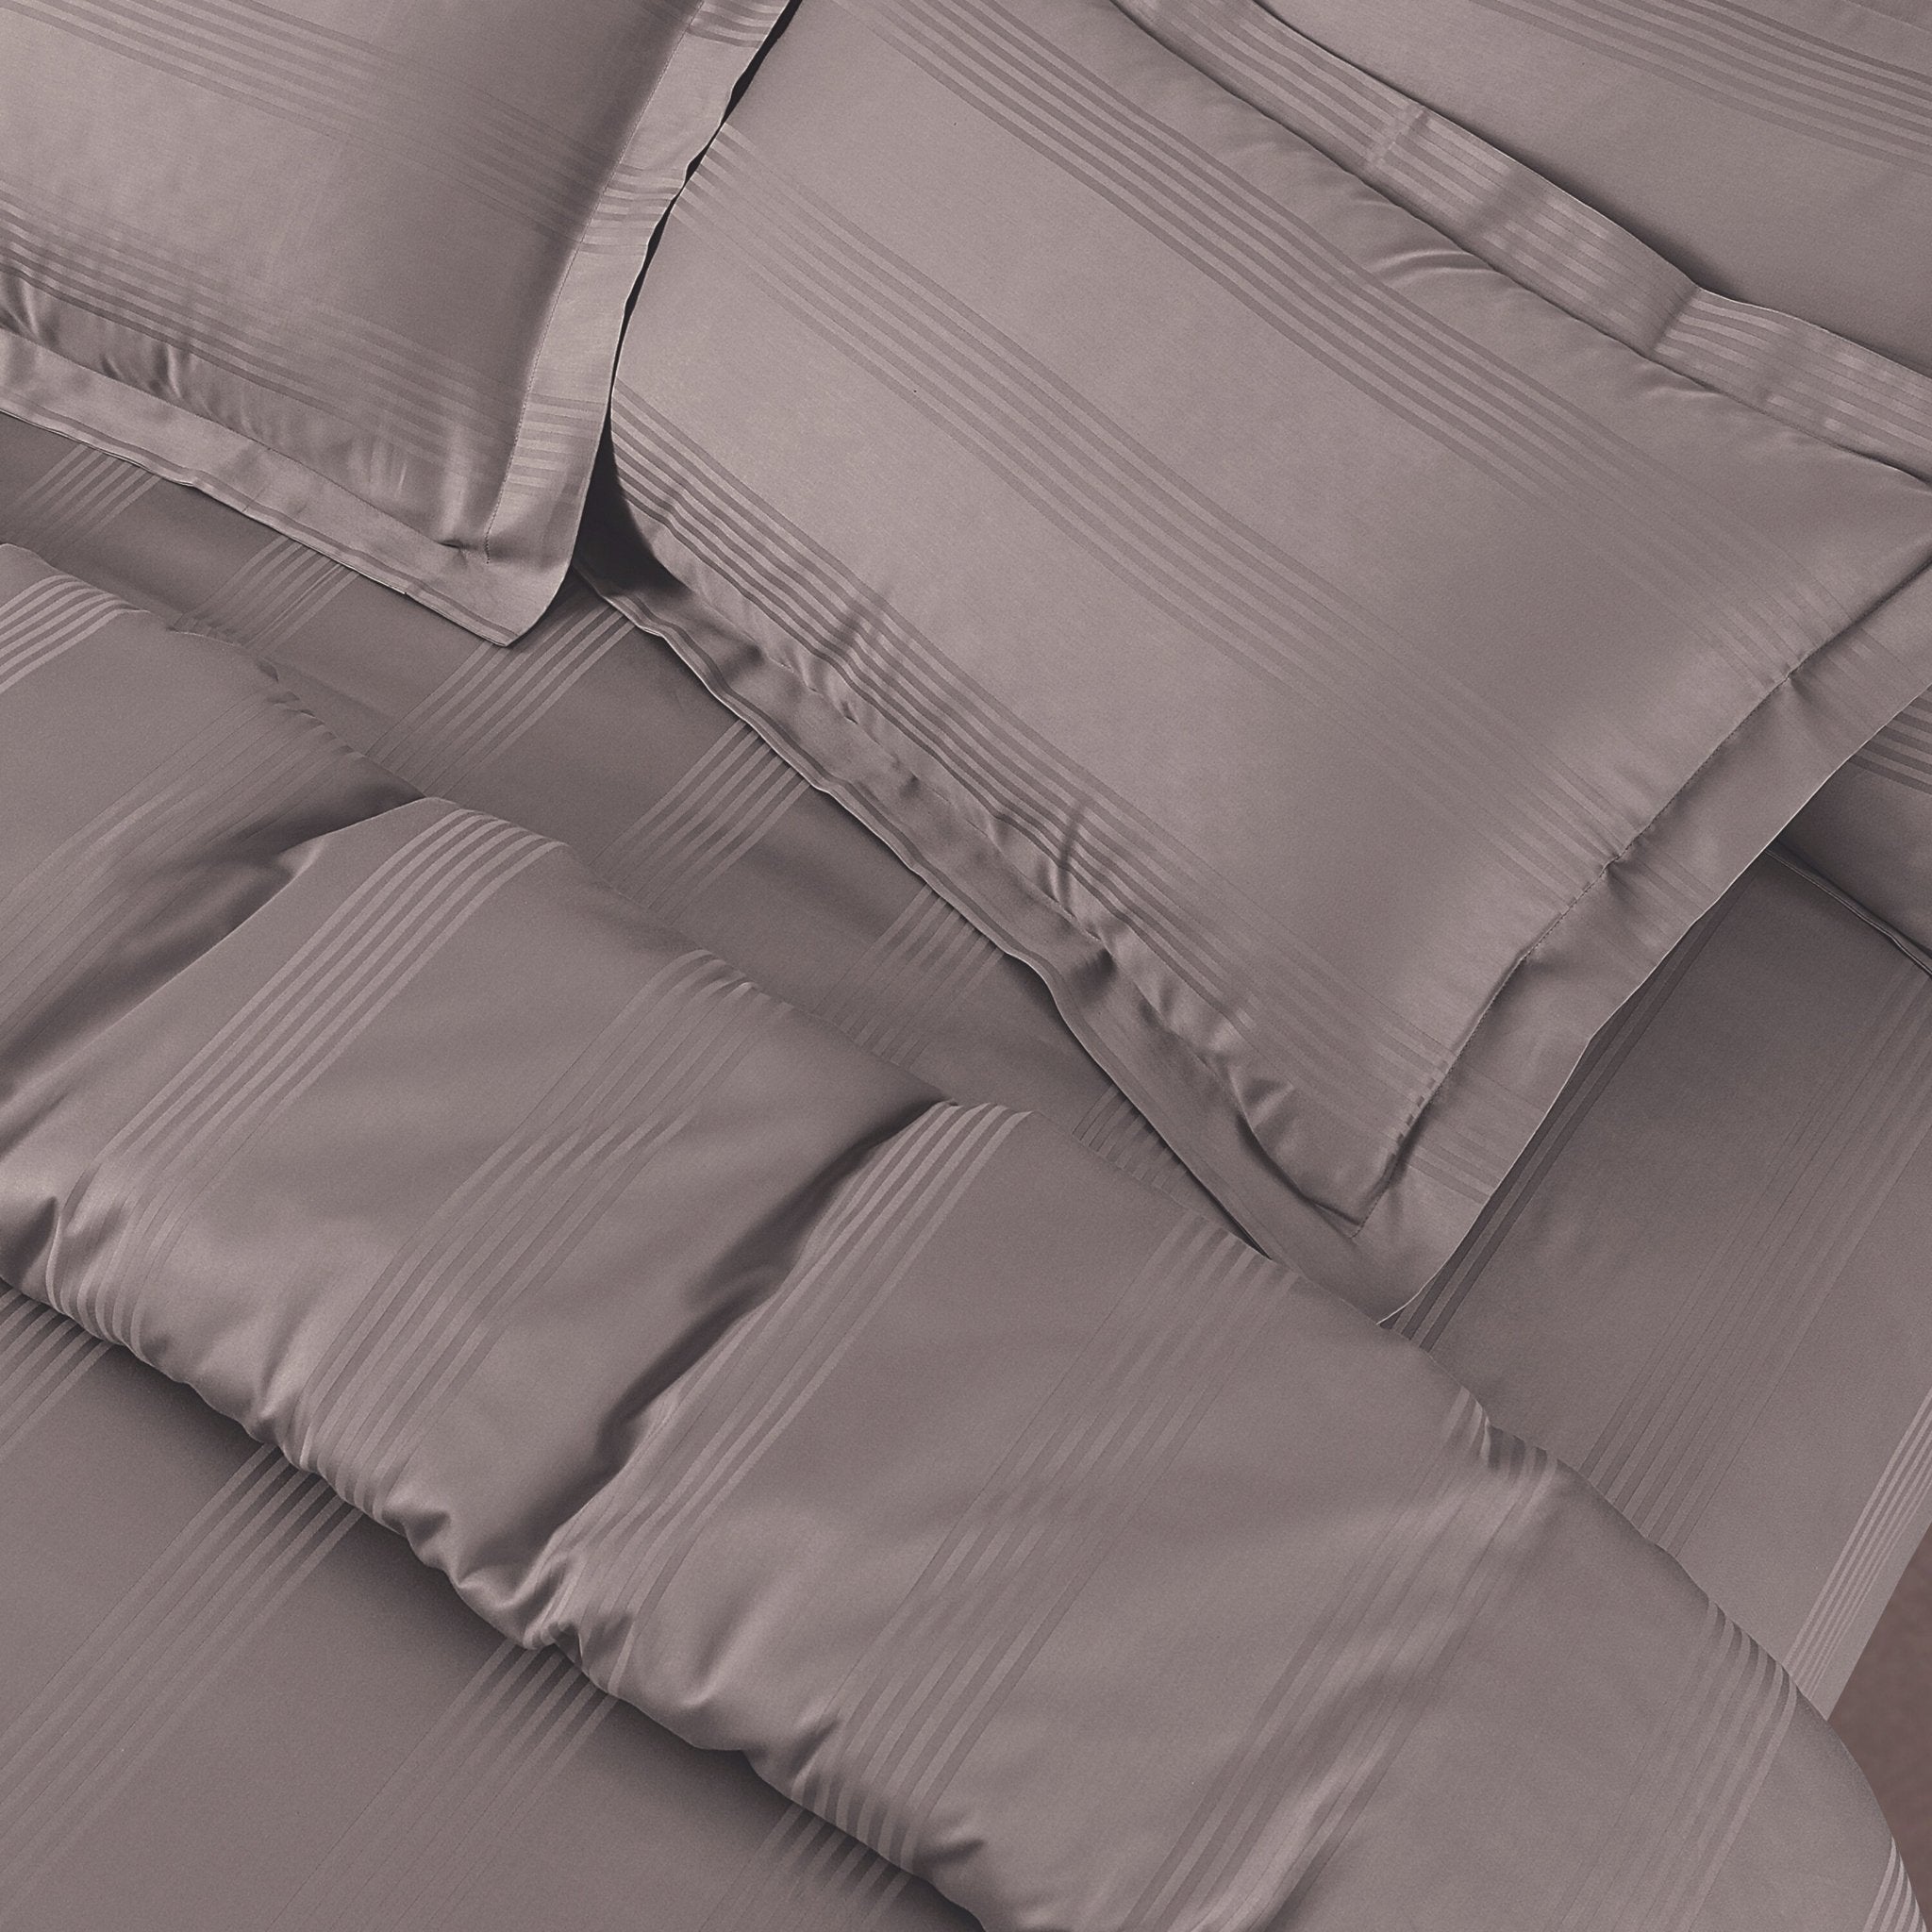 Malako Turin Jacquard Stripes 500 TC 100% Cotton King Size Bed Sheets/Duvet Covers - MALAKO